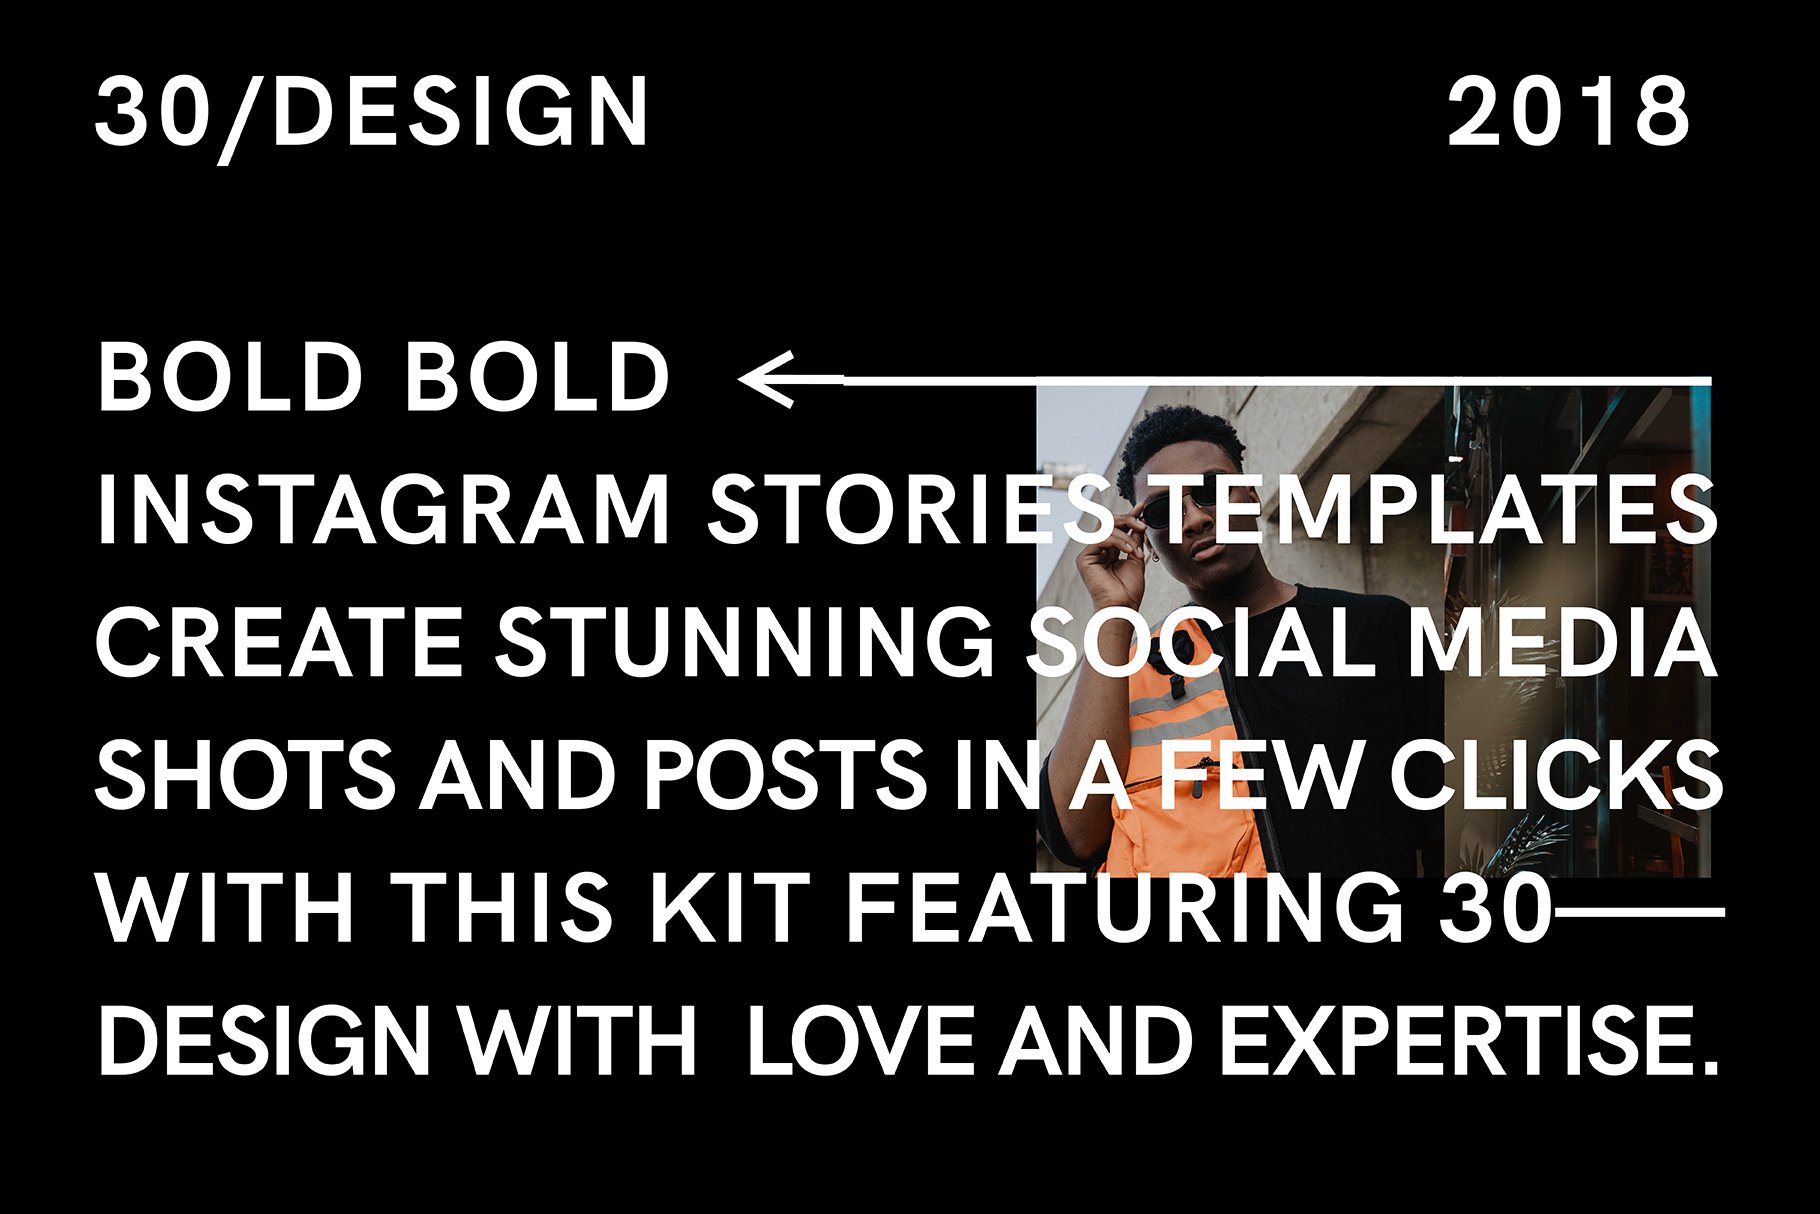 BOLD-潮流嘻哈复古高级Instagram竖屏错版大文字故事动画设计PSD模板 设计素材 第15张